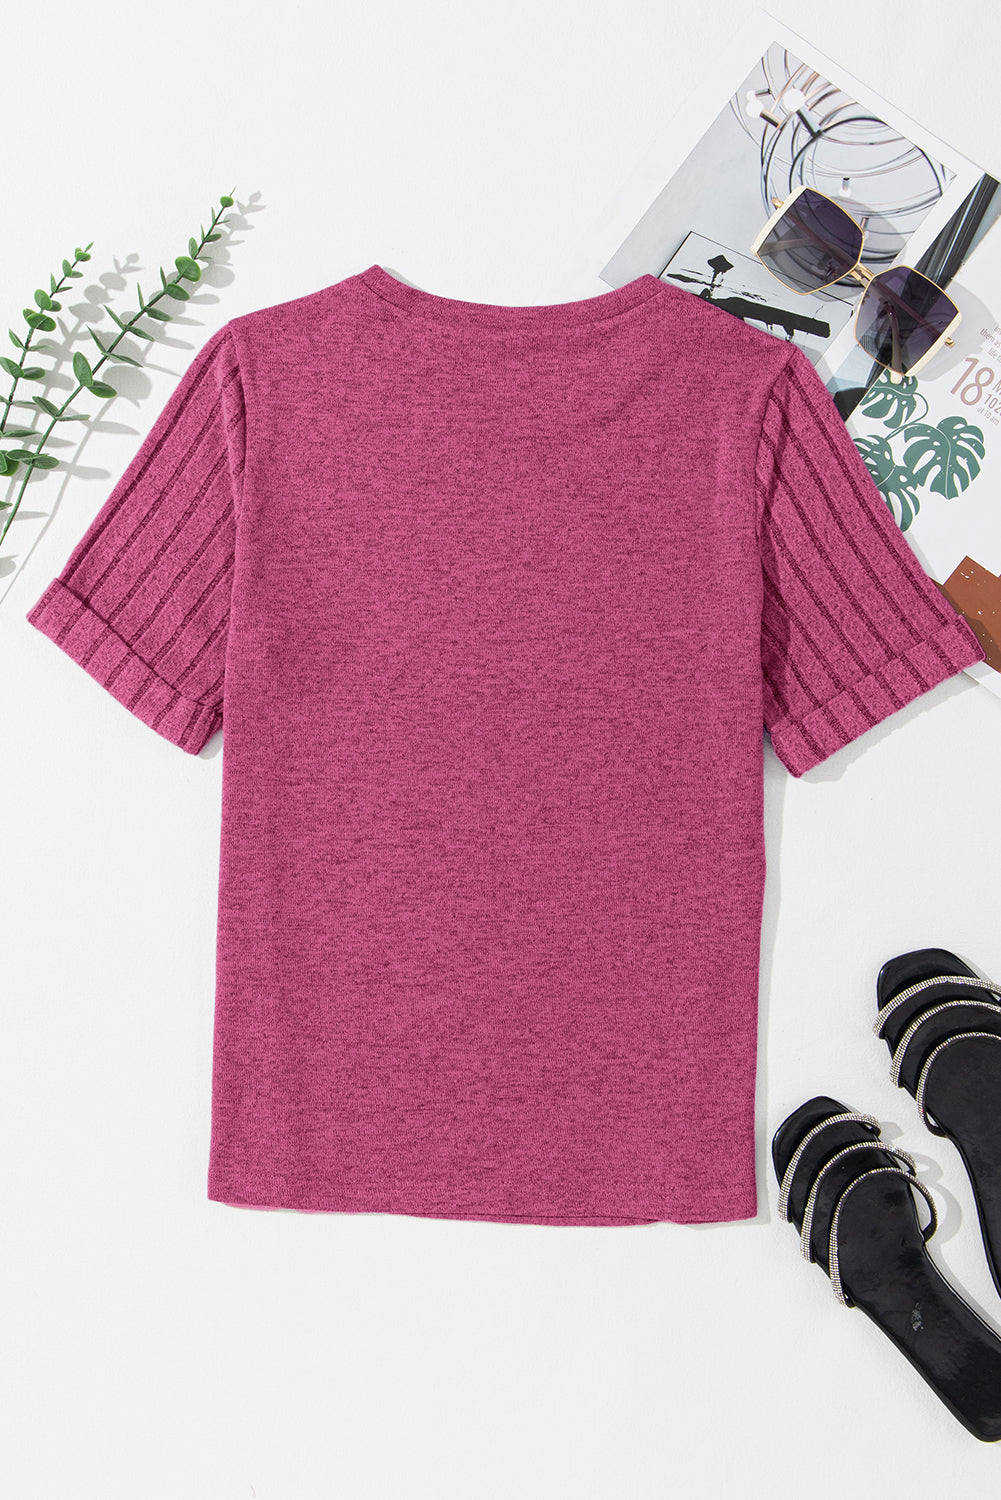 Hellrosa T-Shirt mit gerippten Spleißärmeln und Rundhalsausschnitt